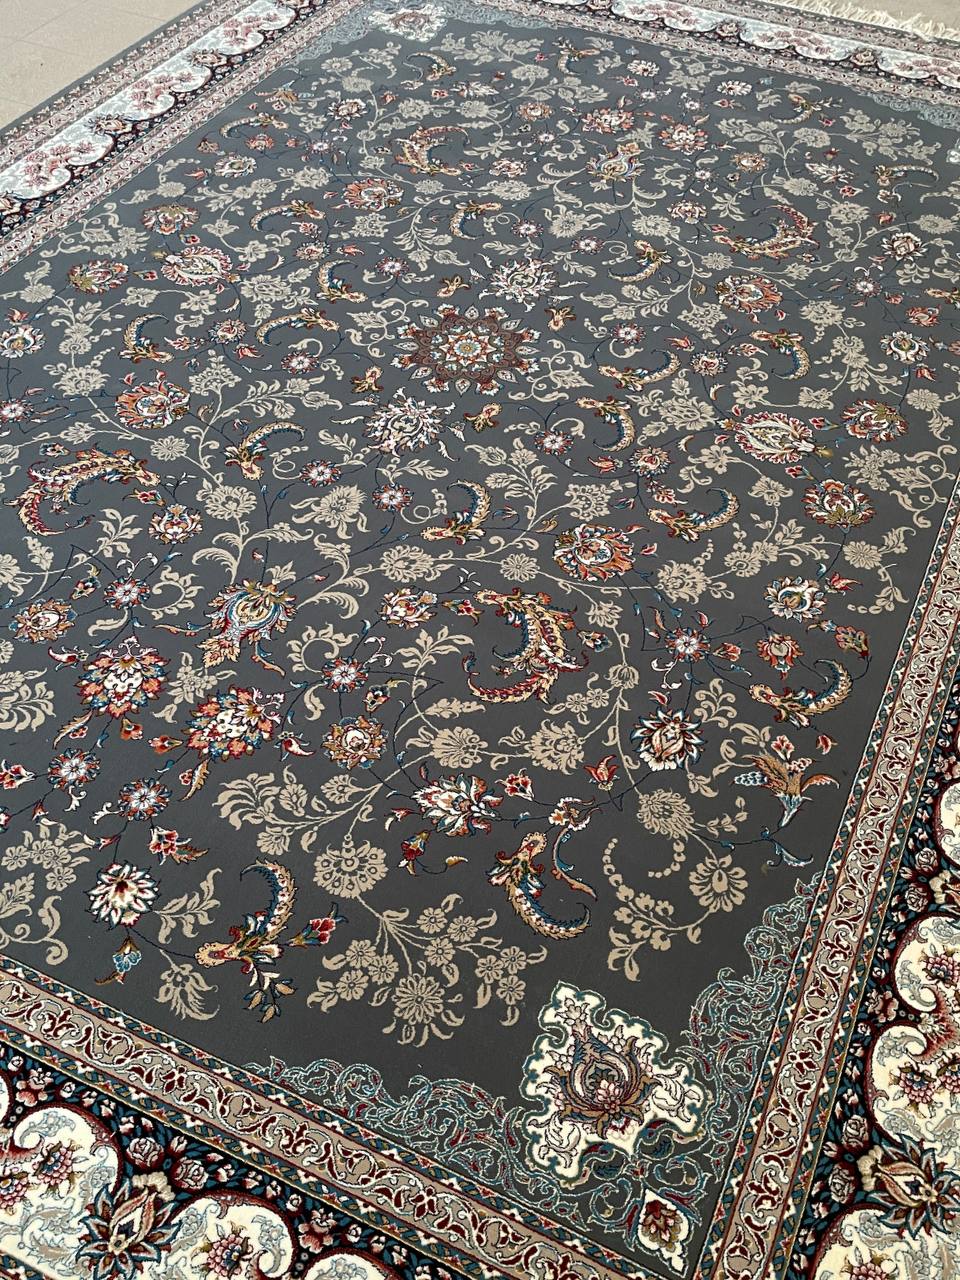 Carpet, 700 comb density, 2550, simple, smoky indigo design, nine colors